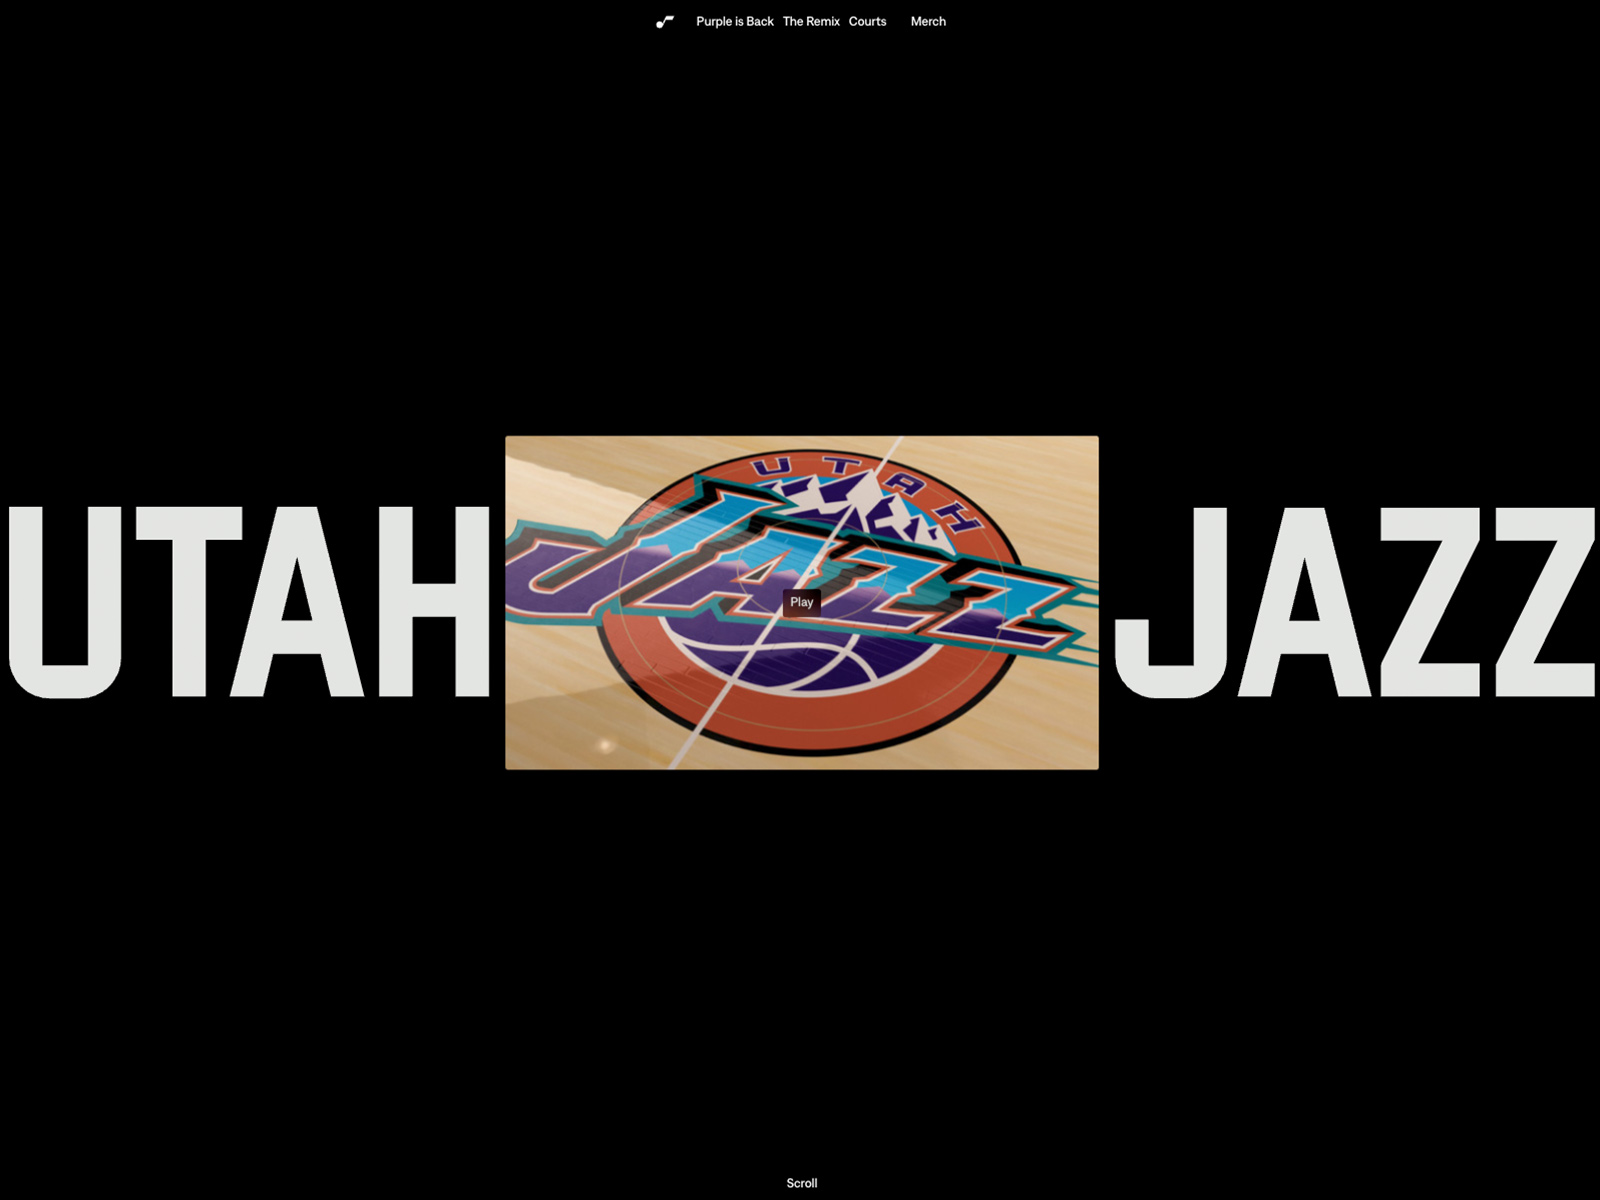 Utah Jazz - Purple is back